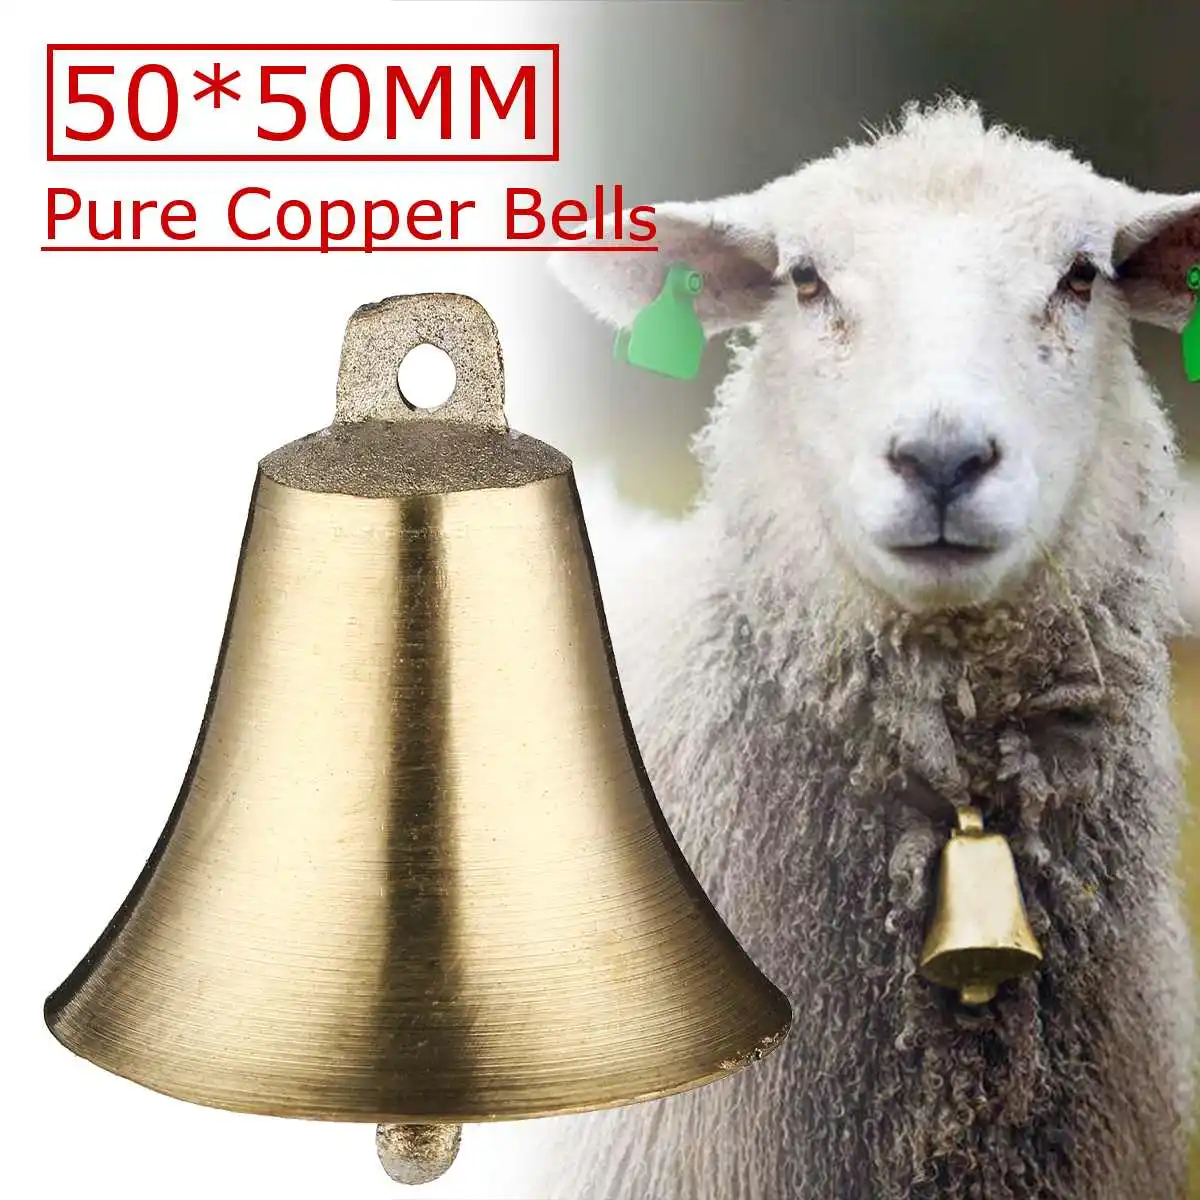 

Loud Copper Sheep Bells Cow Horse Livestock Animal Husbandry Bell Sound Super Loud Brass Crisp Farther Farm Grazing Bell Decor